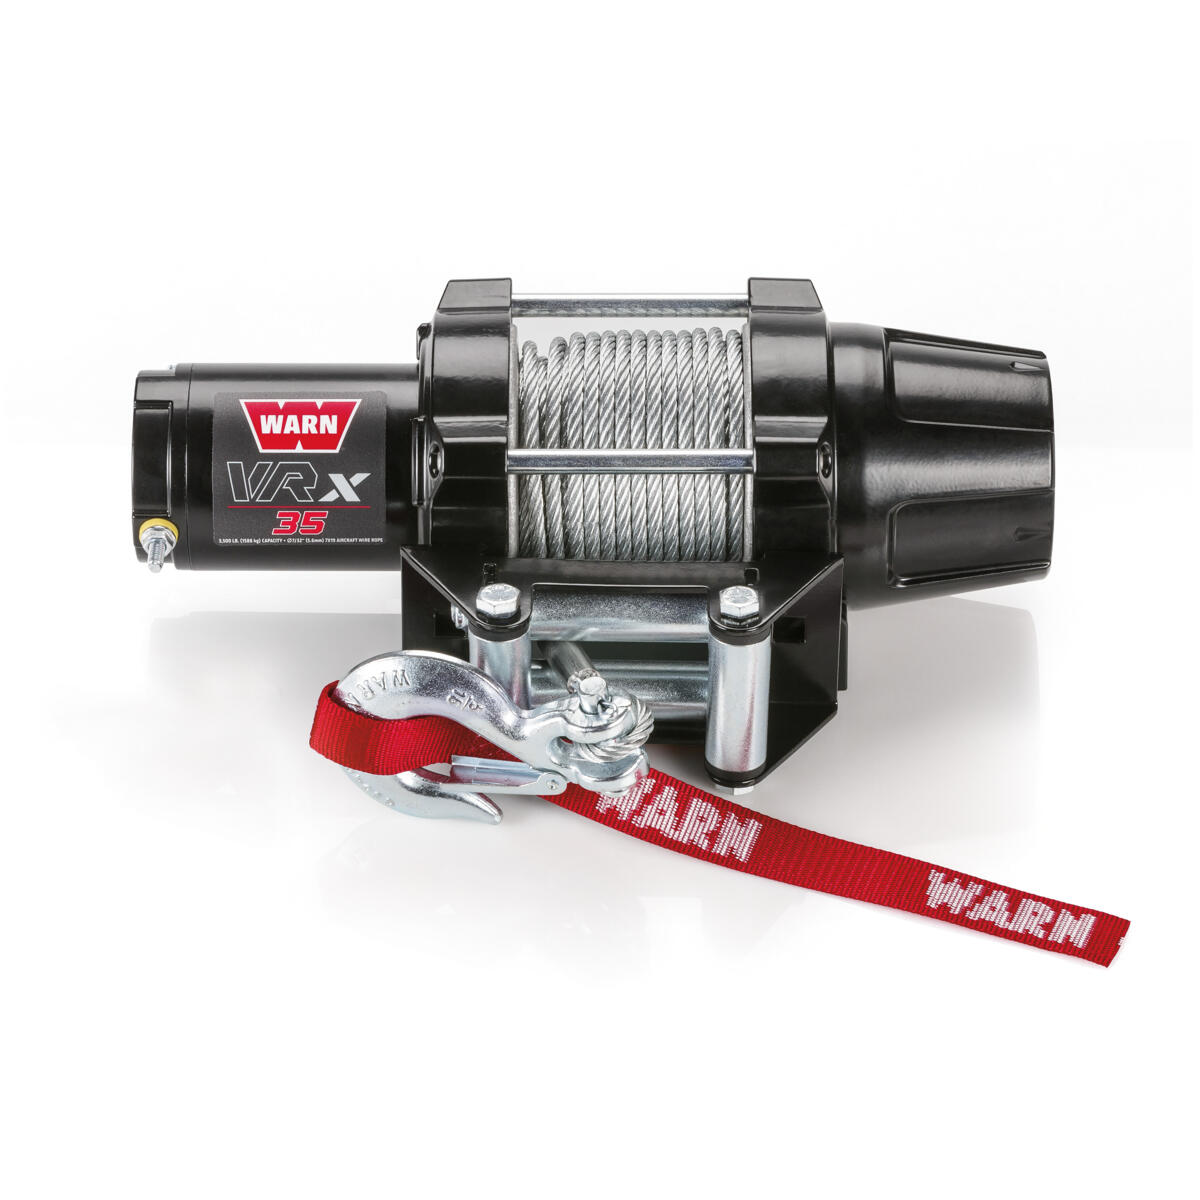 Със своята изцяло метална конструкция лебедката WARN® VRX с 15,24 метра стоманено въже включва новия съединител, разработен въз основа на конструкцията на заключващата се главина WARN® 4WD.